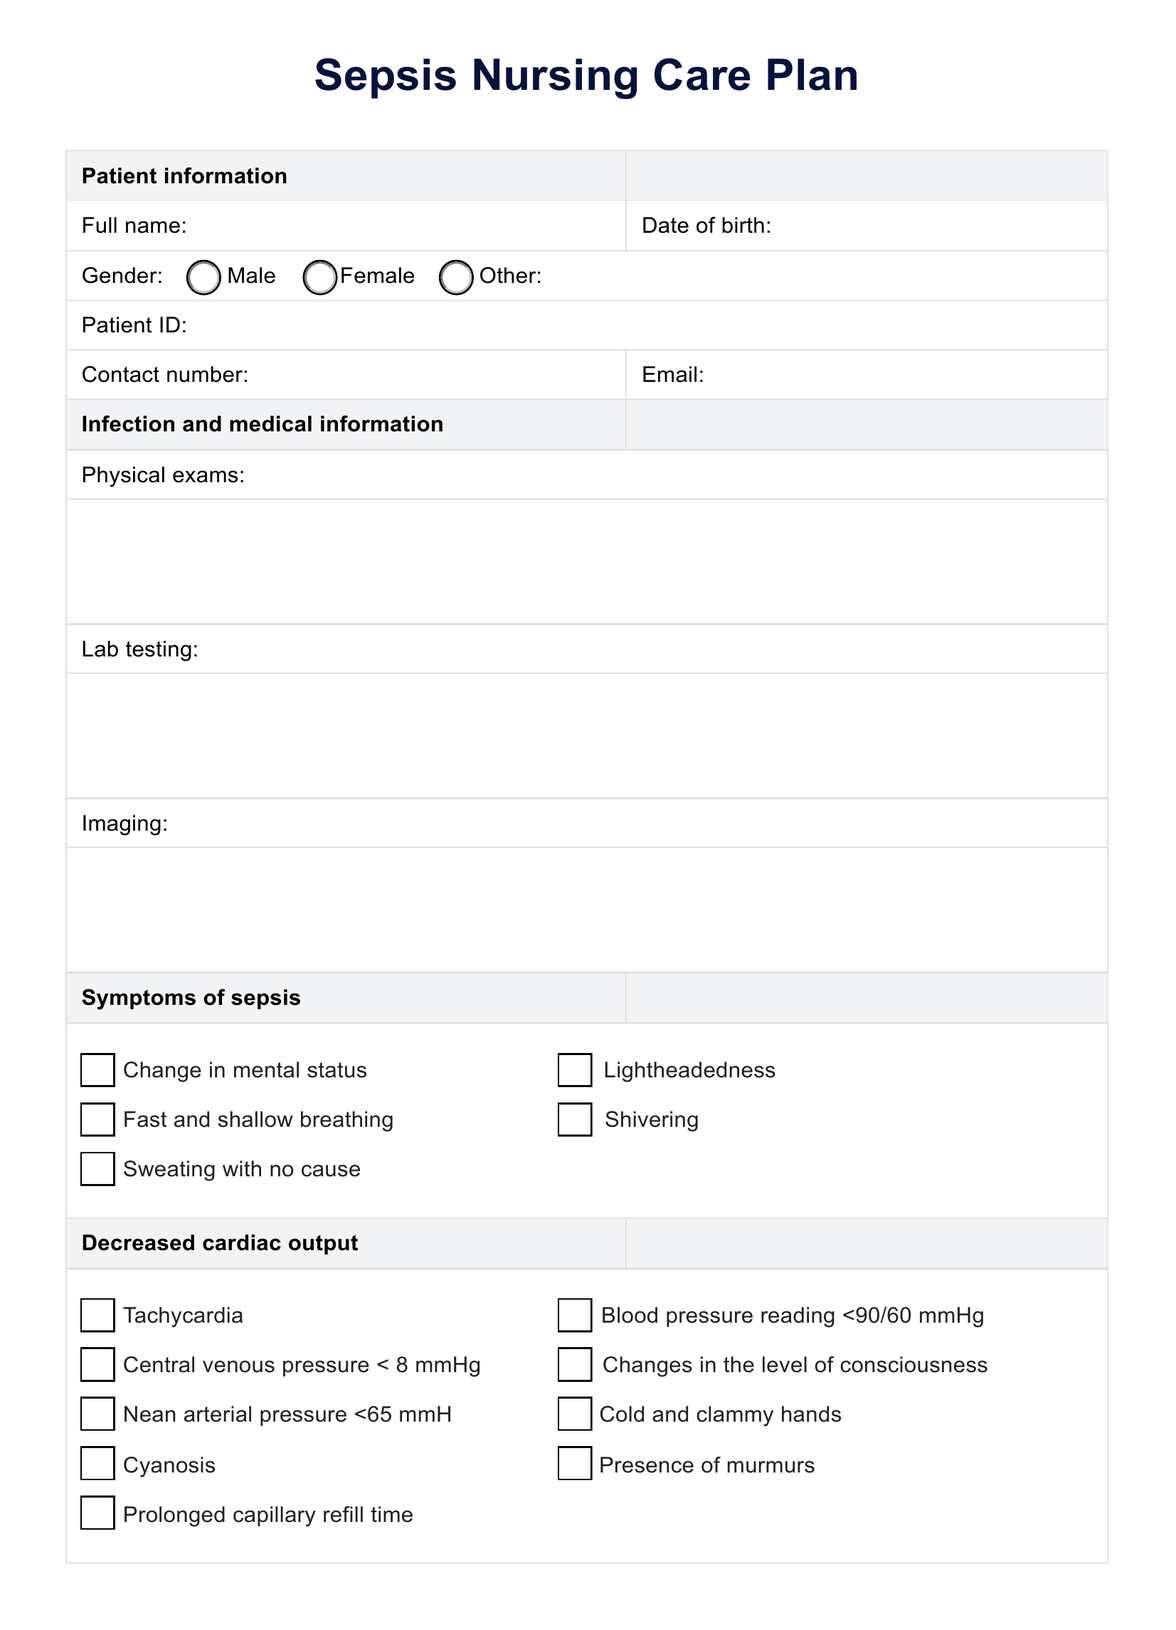 Sepsis Nursing Care Plan PDF Example